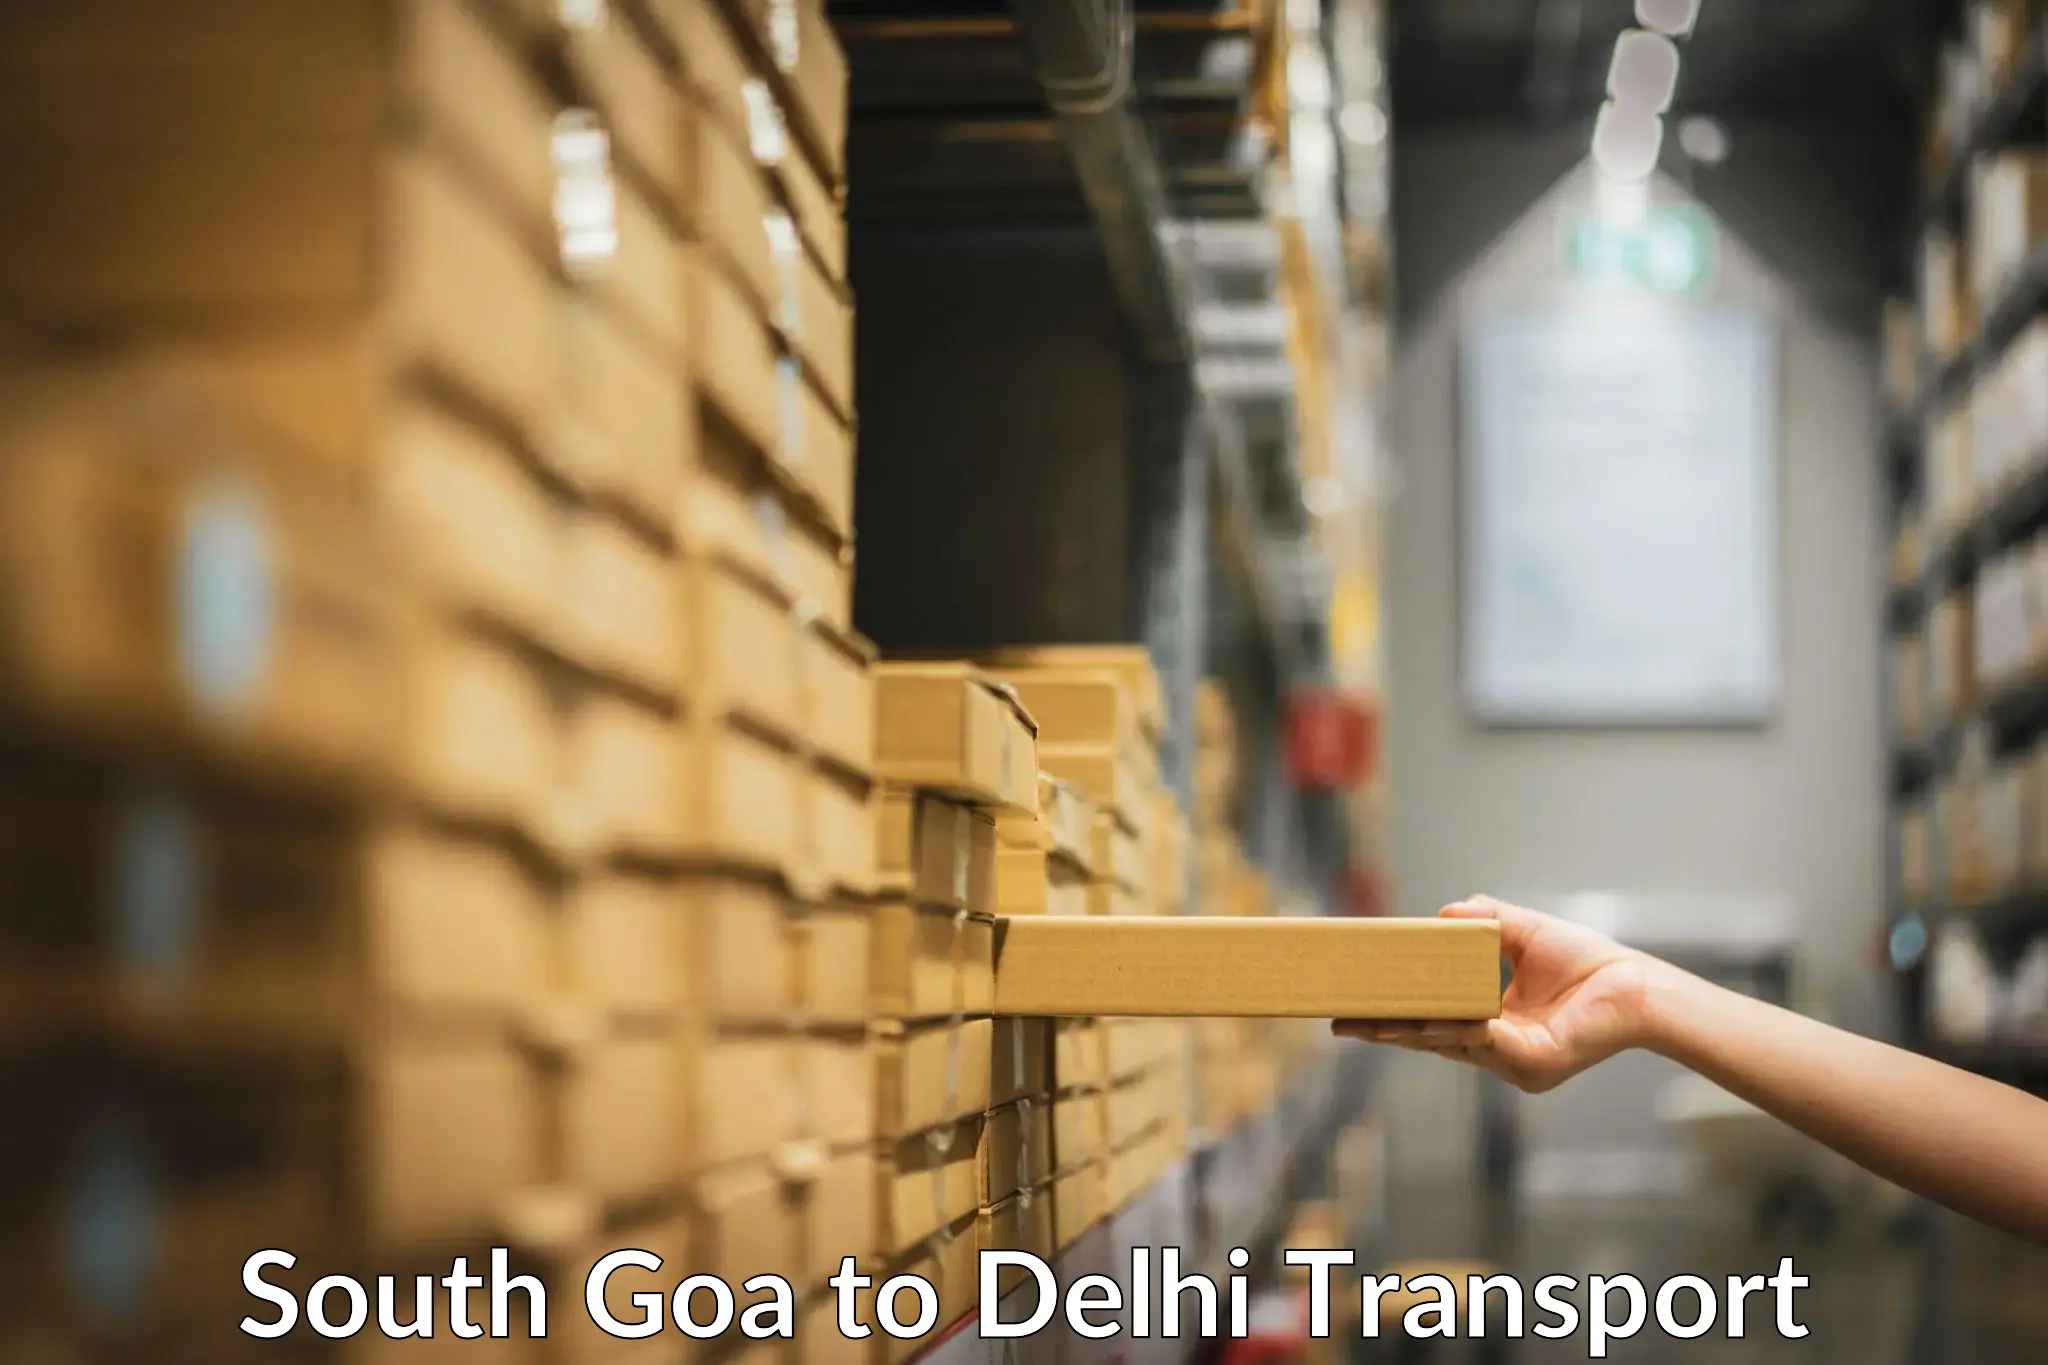 Air cargo transport services South Goa to Delhi